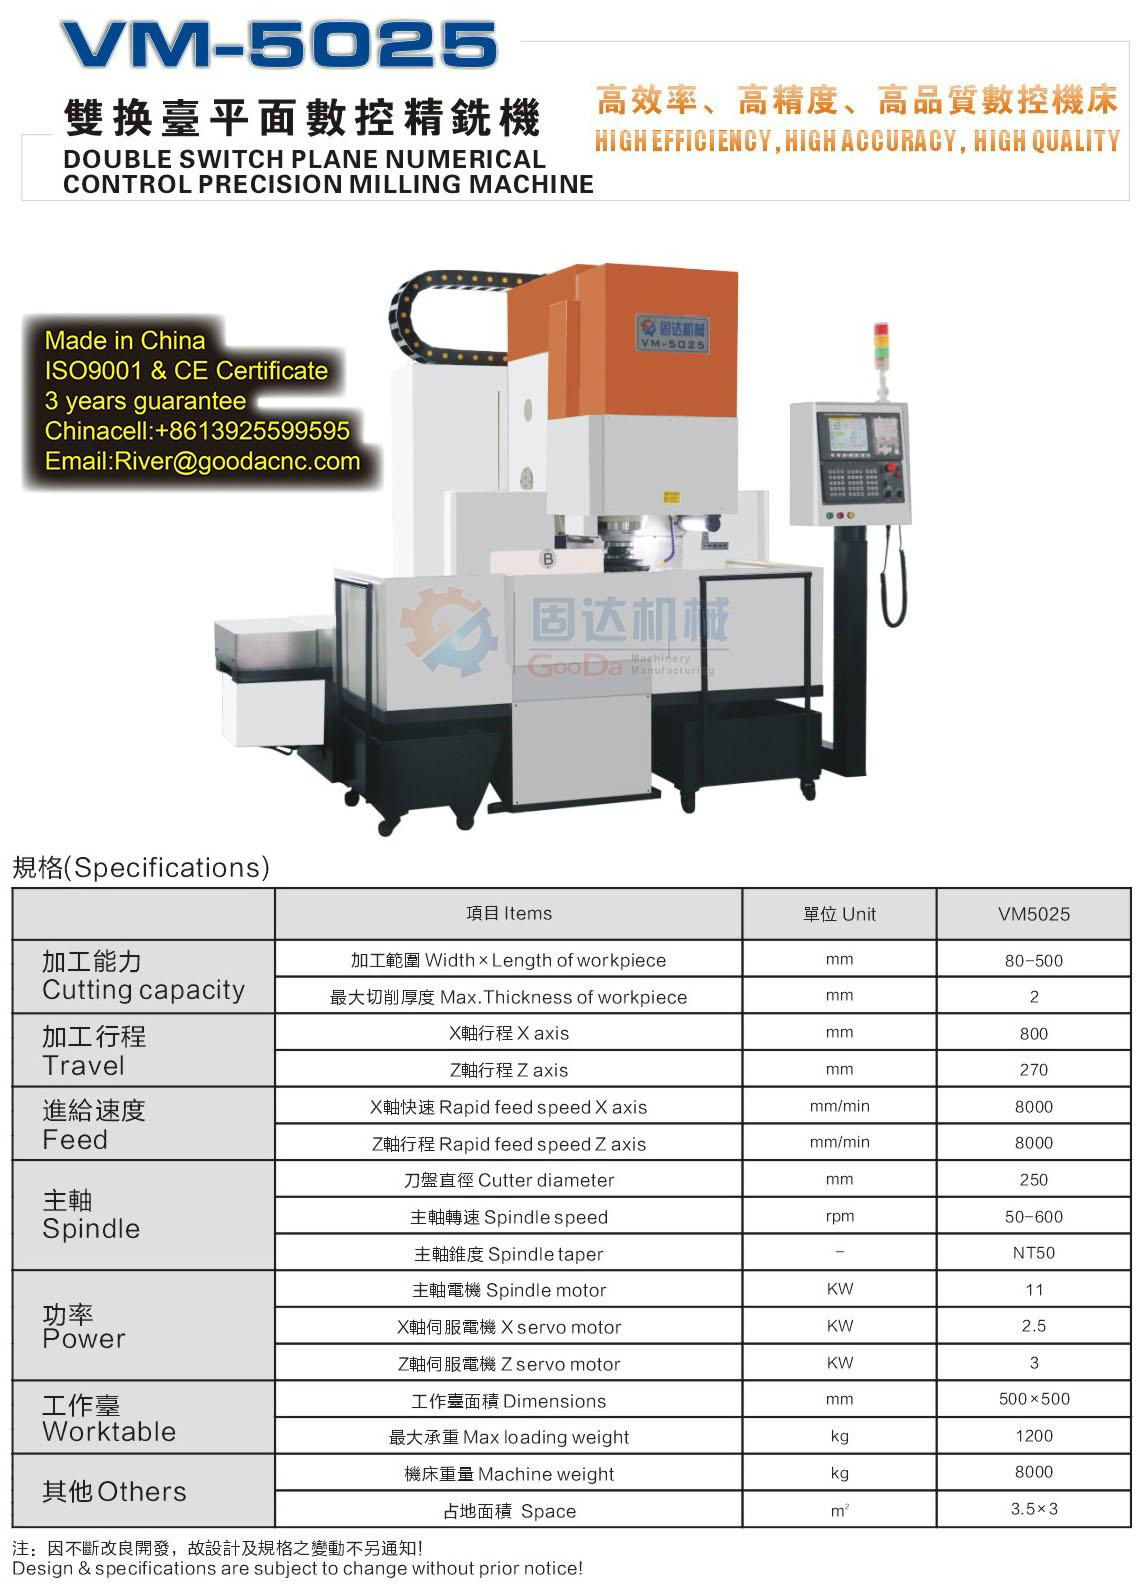 CNC milling services machine CNC milling services machine